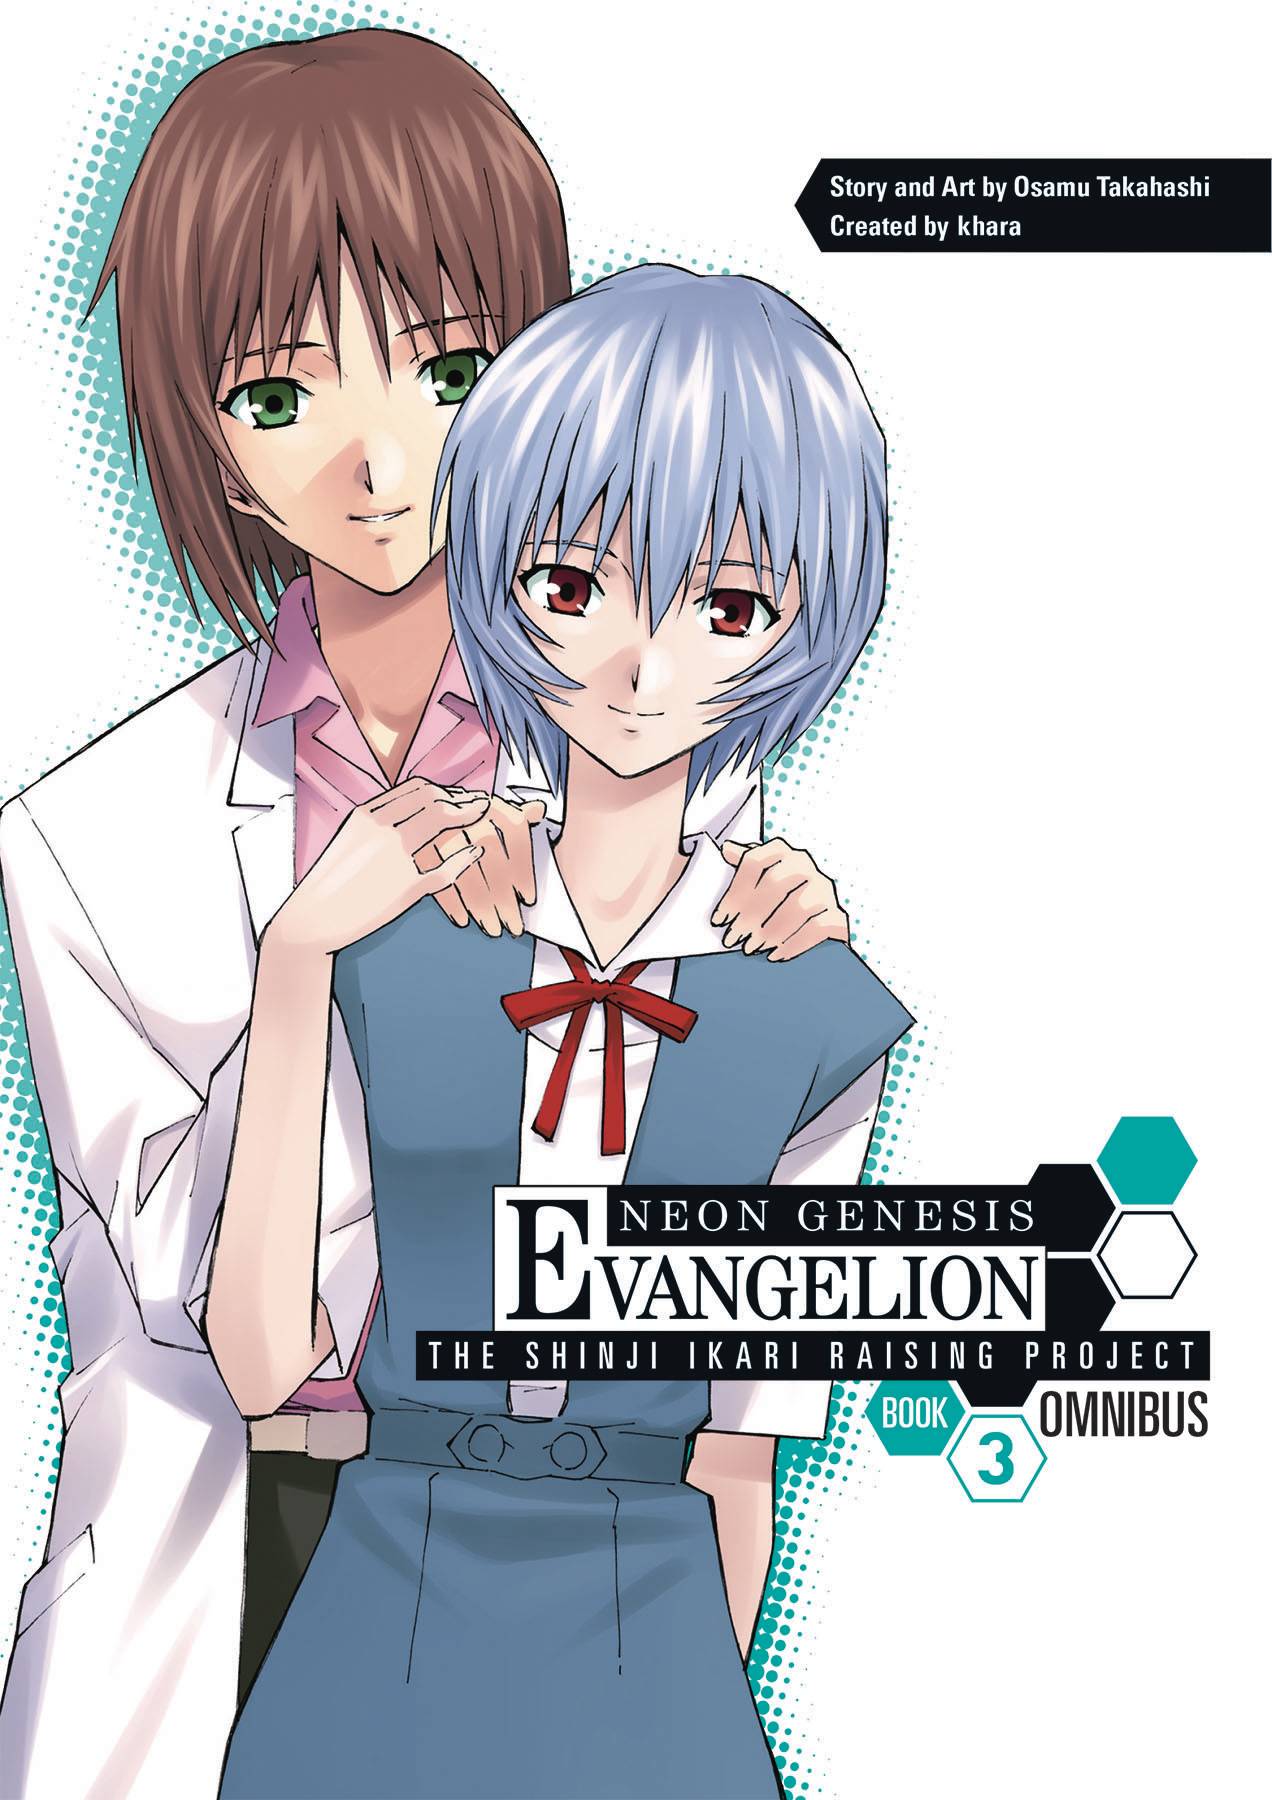 Neon Genesis Evangelion Shinji Ikari Raising Project Omnibus Manga Volume 3